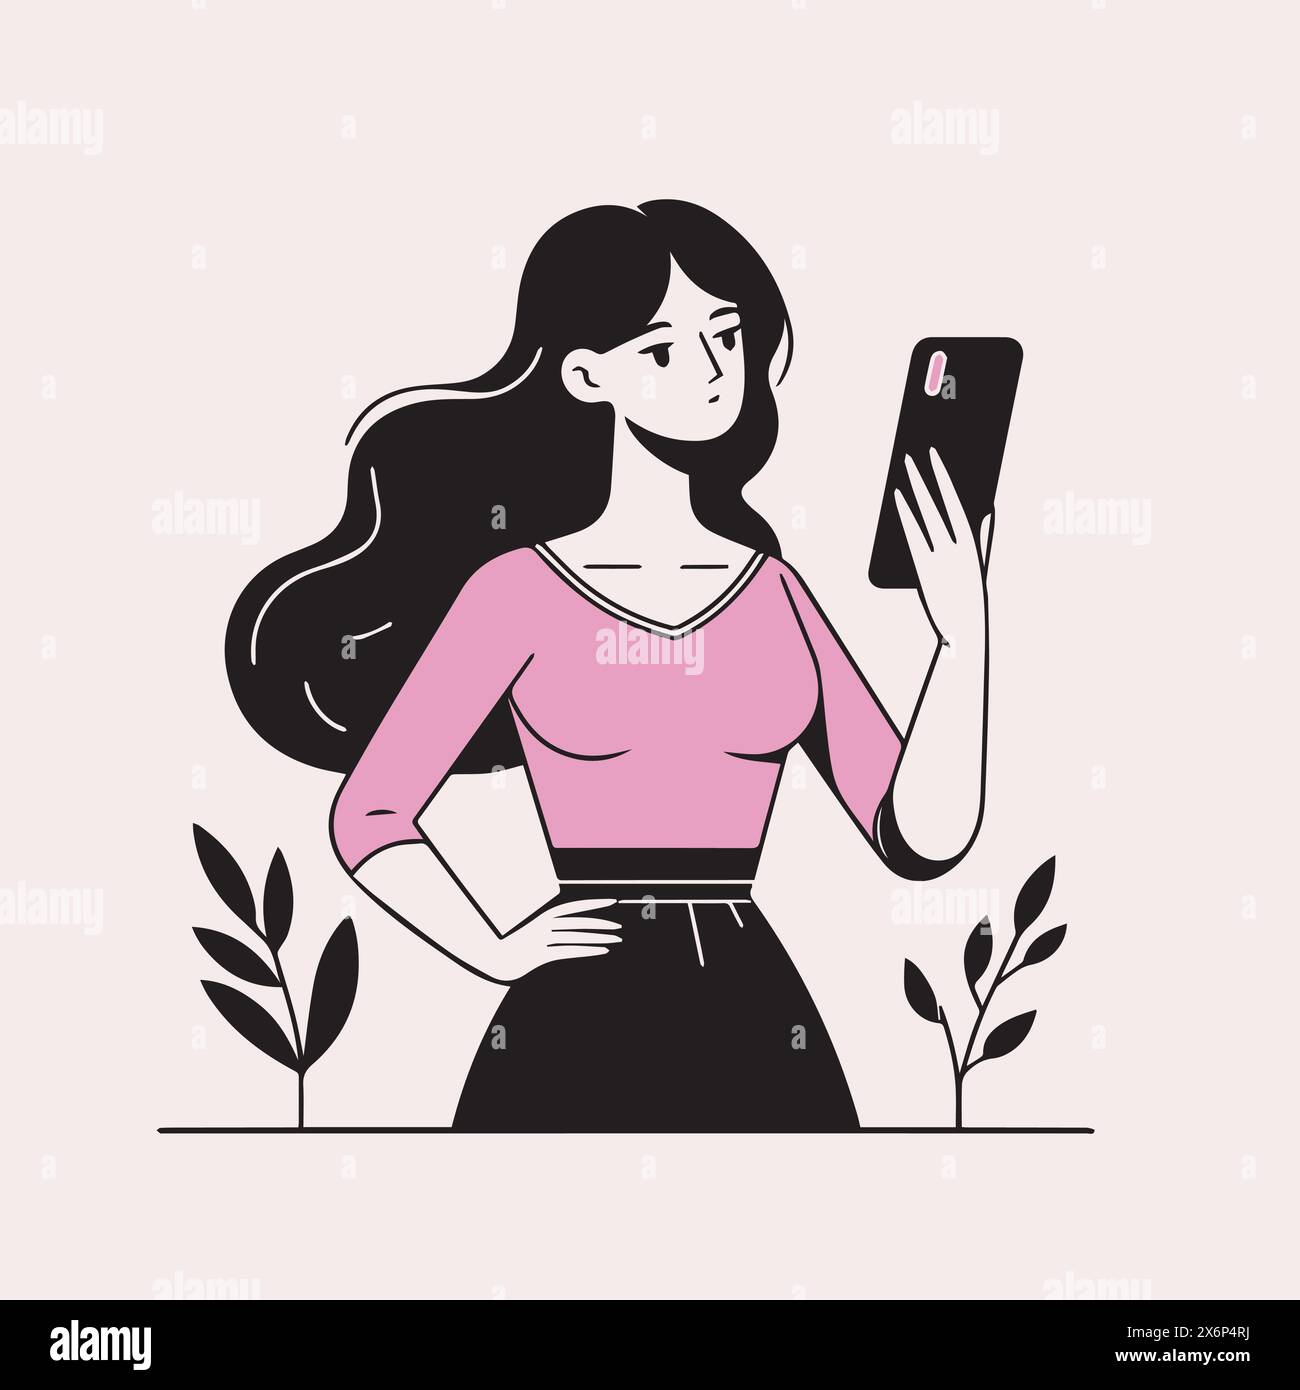 Affascinanti illustrazioni di personaggi femminili e femminili: Pose diverse con un tocco di rosa per progetti creativi Illustrazione Vettoriale